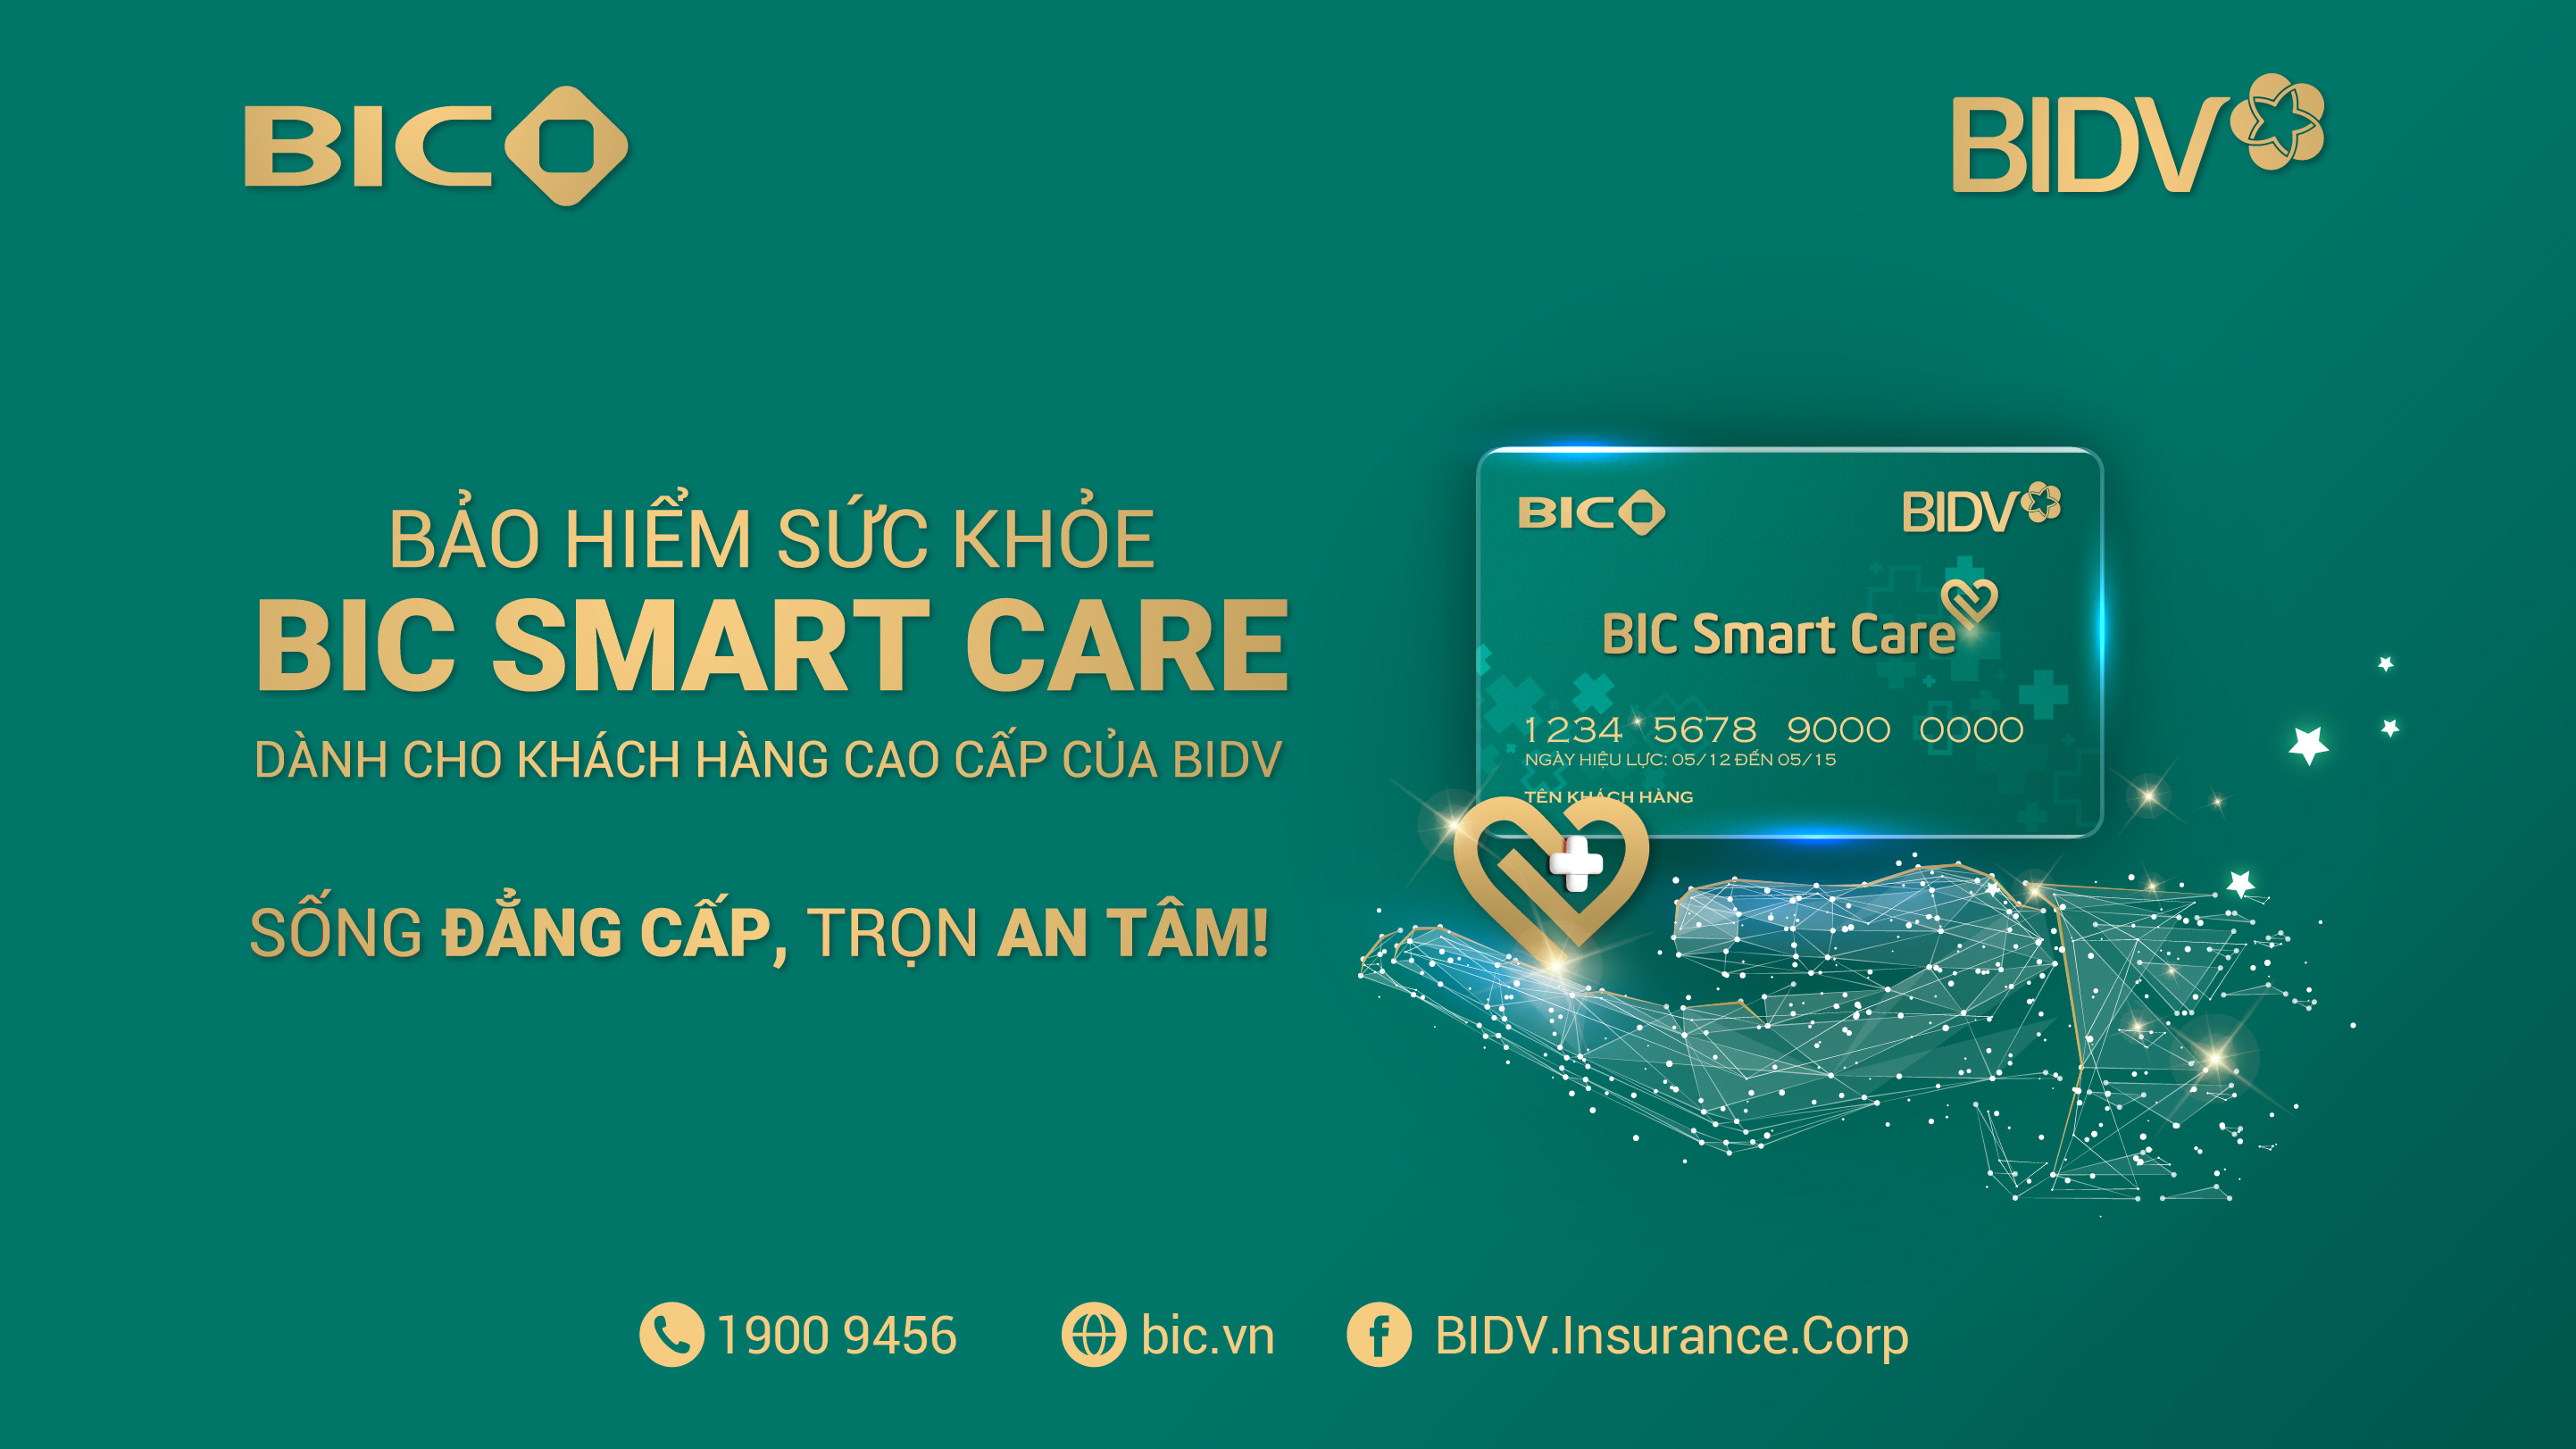 BIC ra mắt bảo hiểm sức khỏe BIC Smart Care dành cho khách hàng cao cấp của BIDV